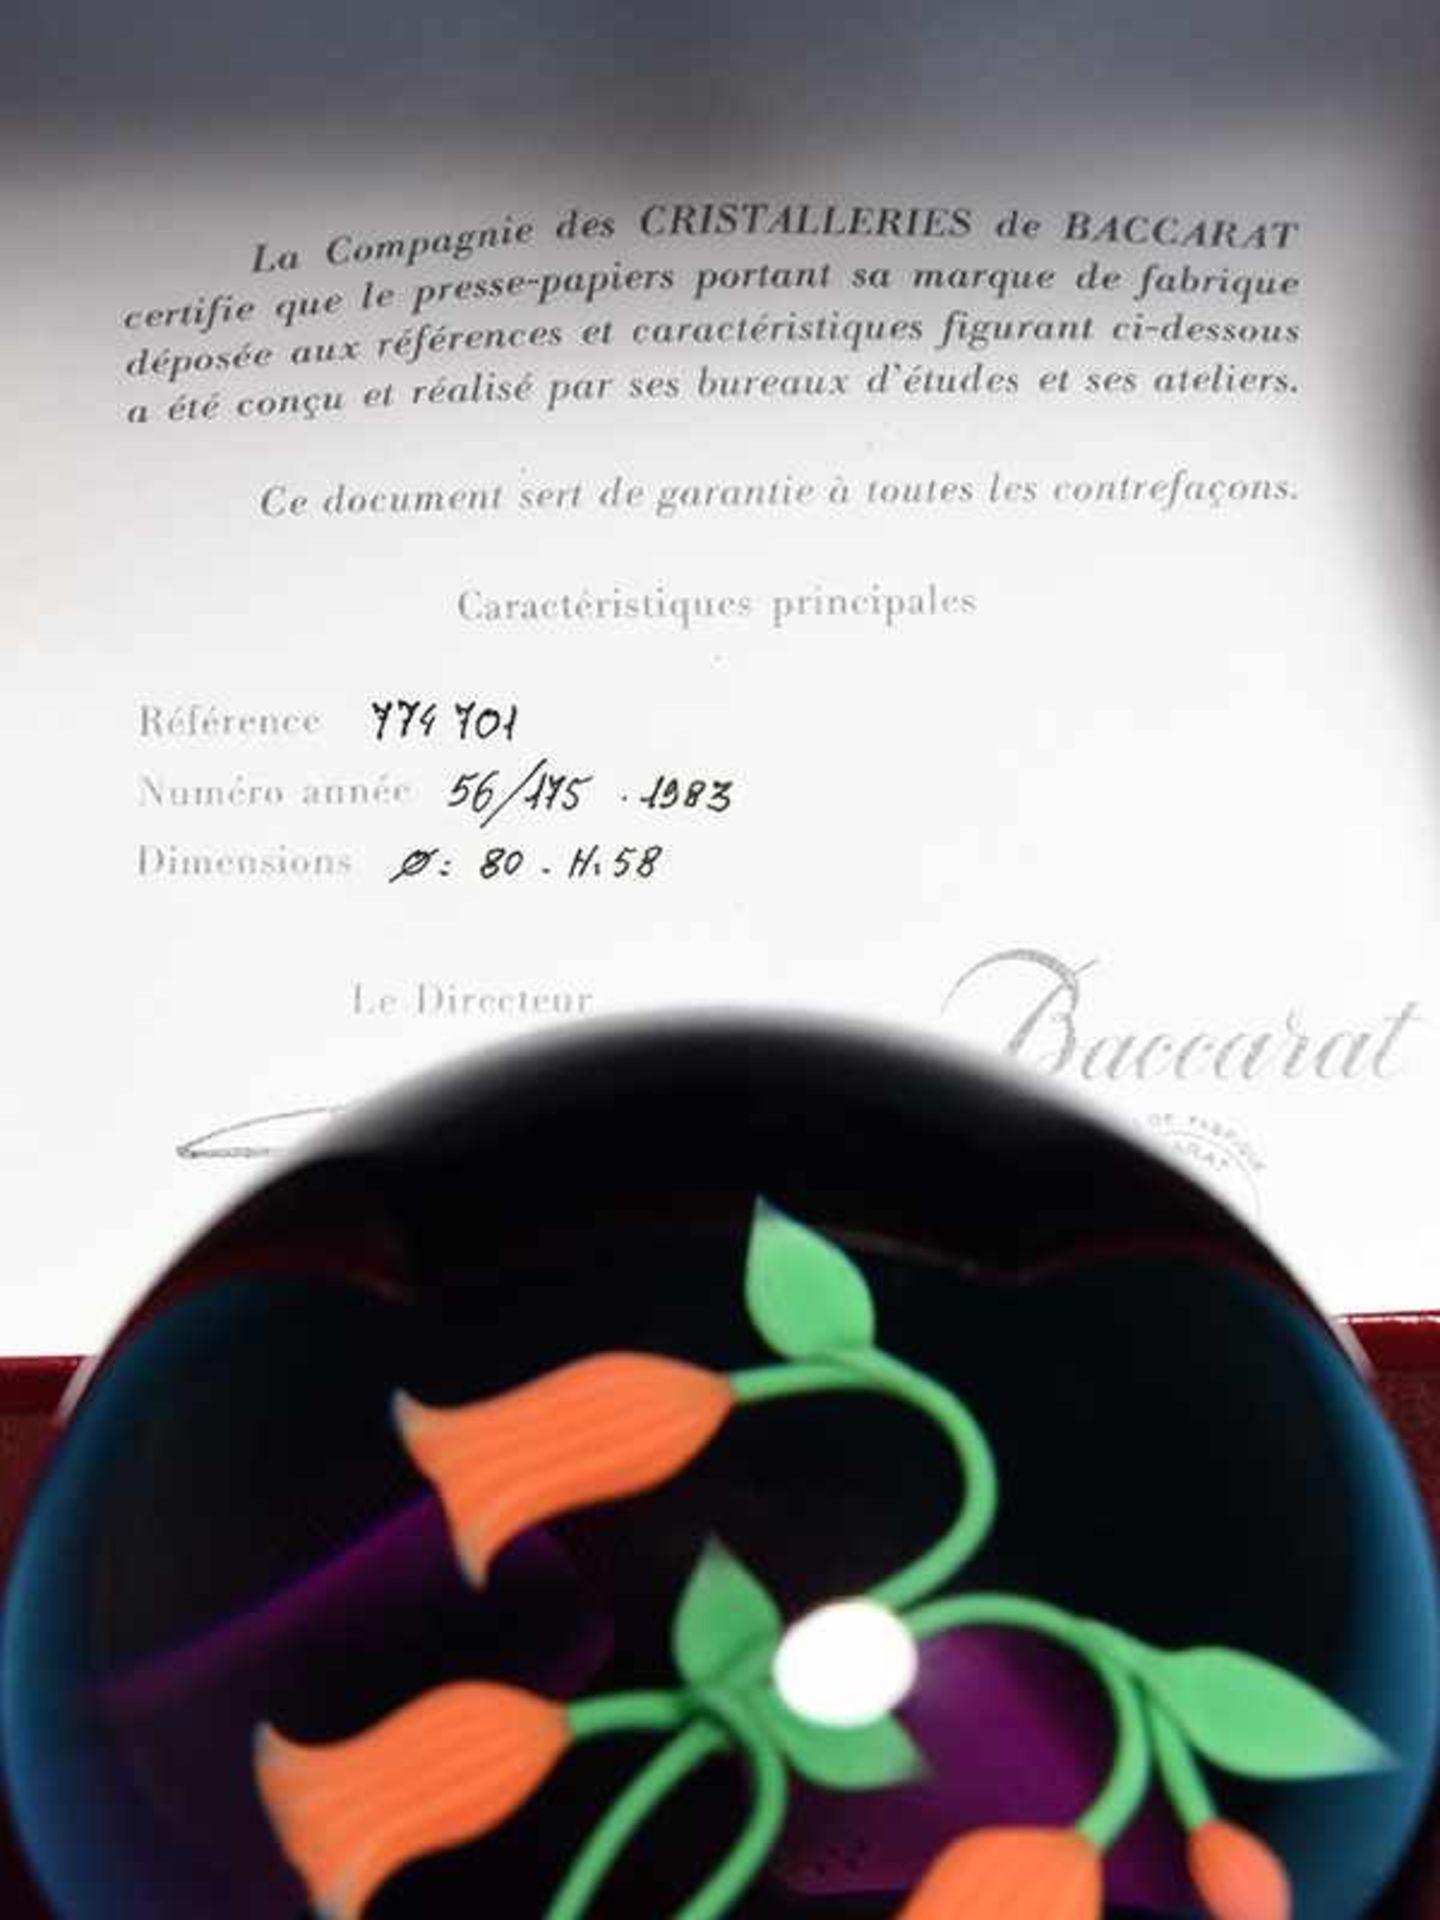 Paperweight, "Campanule rosé", Baccarat, Frankreich, 1983. Farbloses Glas mit bunten Einschmelzungen - Bild 2 aus 4